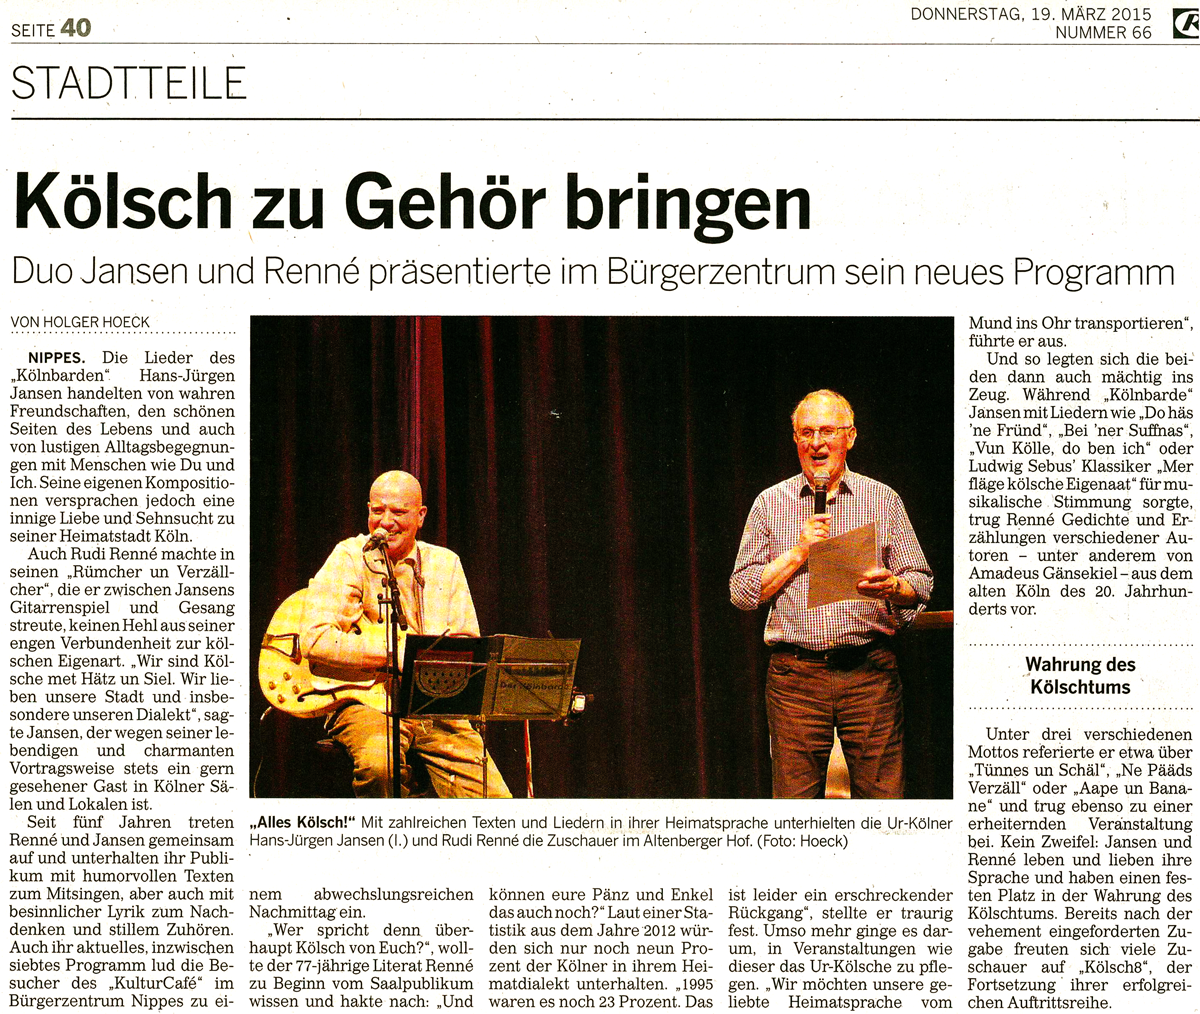 Artikel in der Kölnischen Rundschau vom 19. März 2015